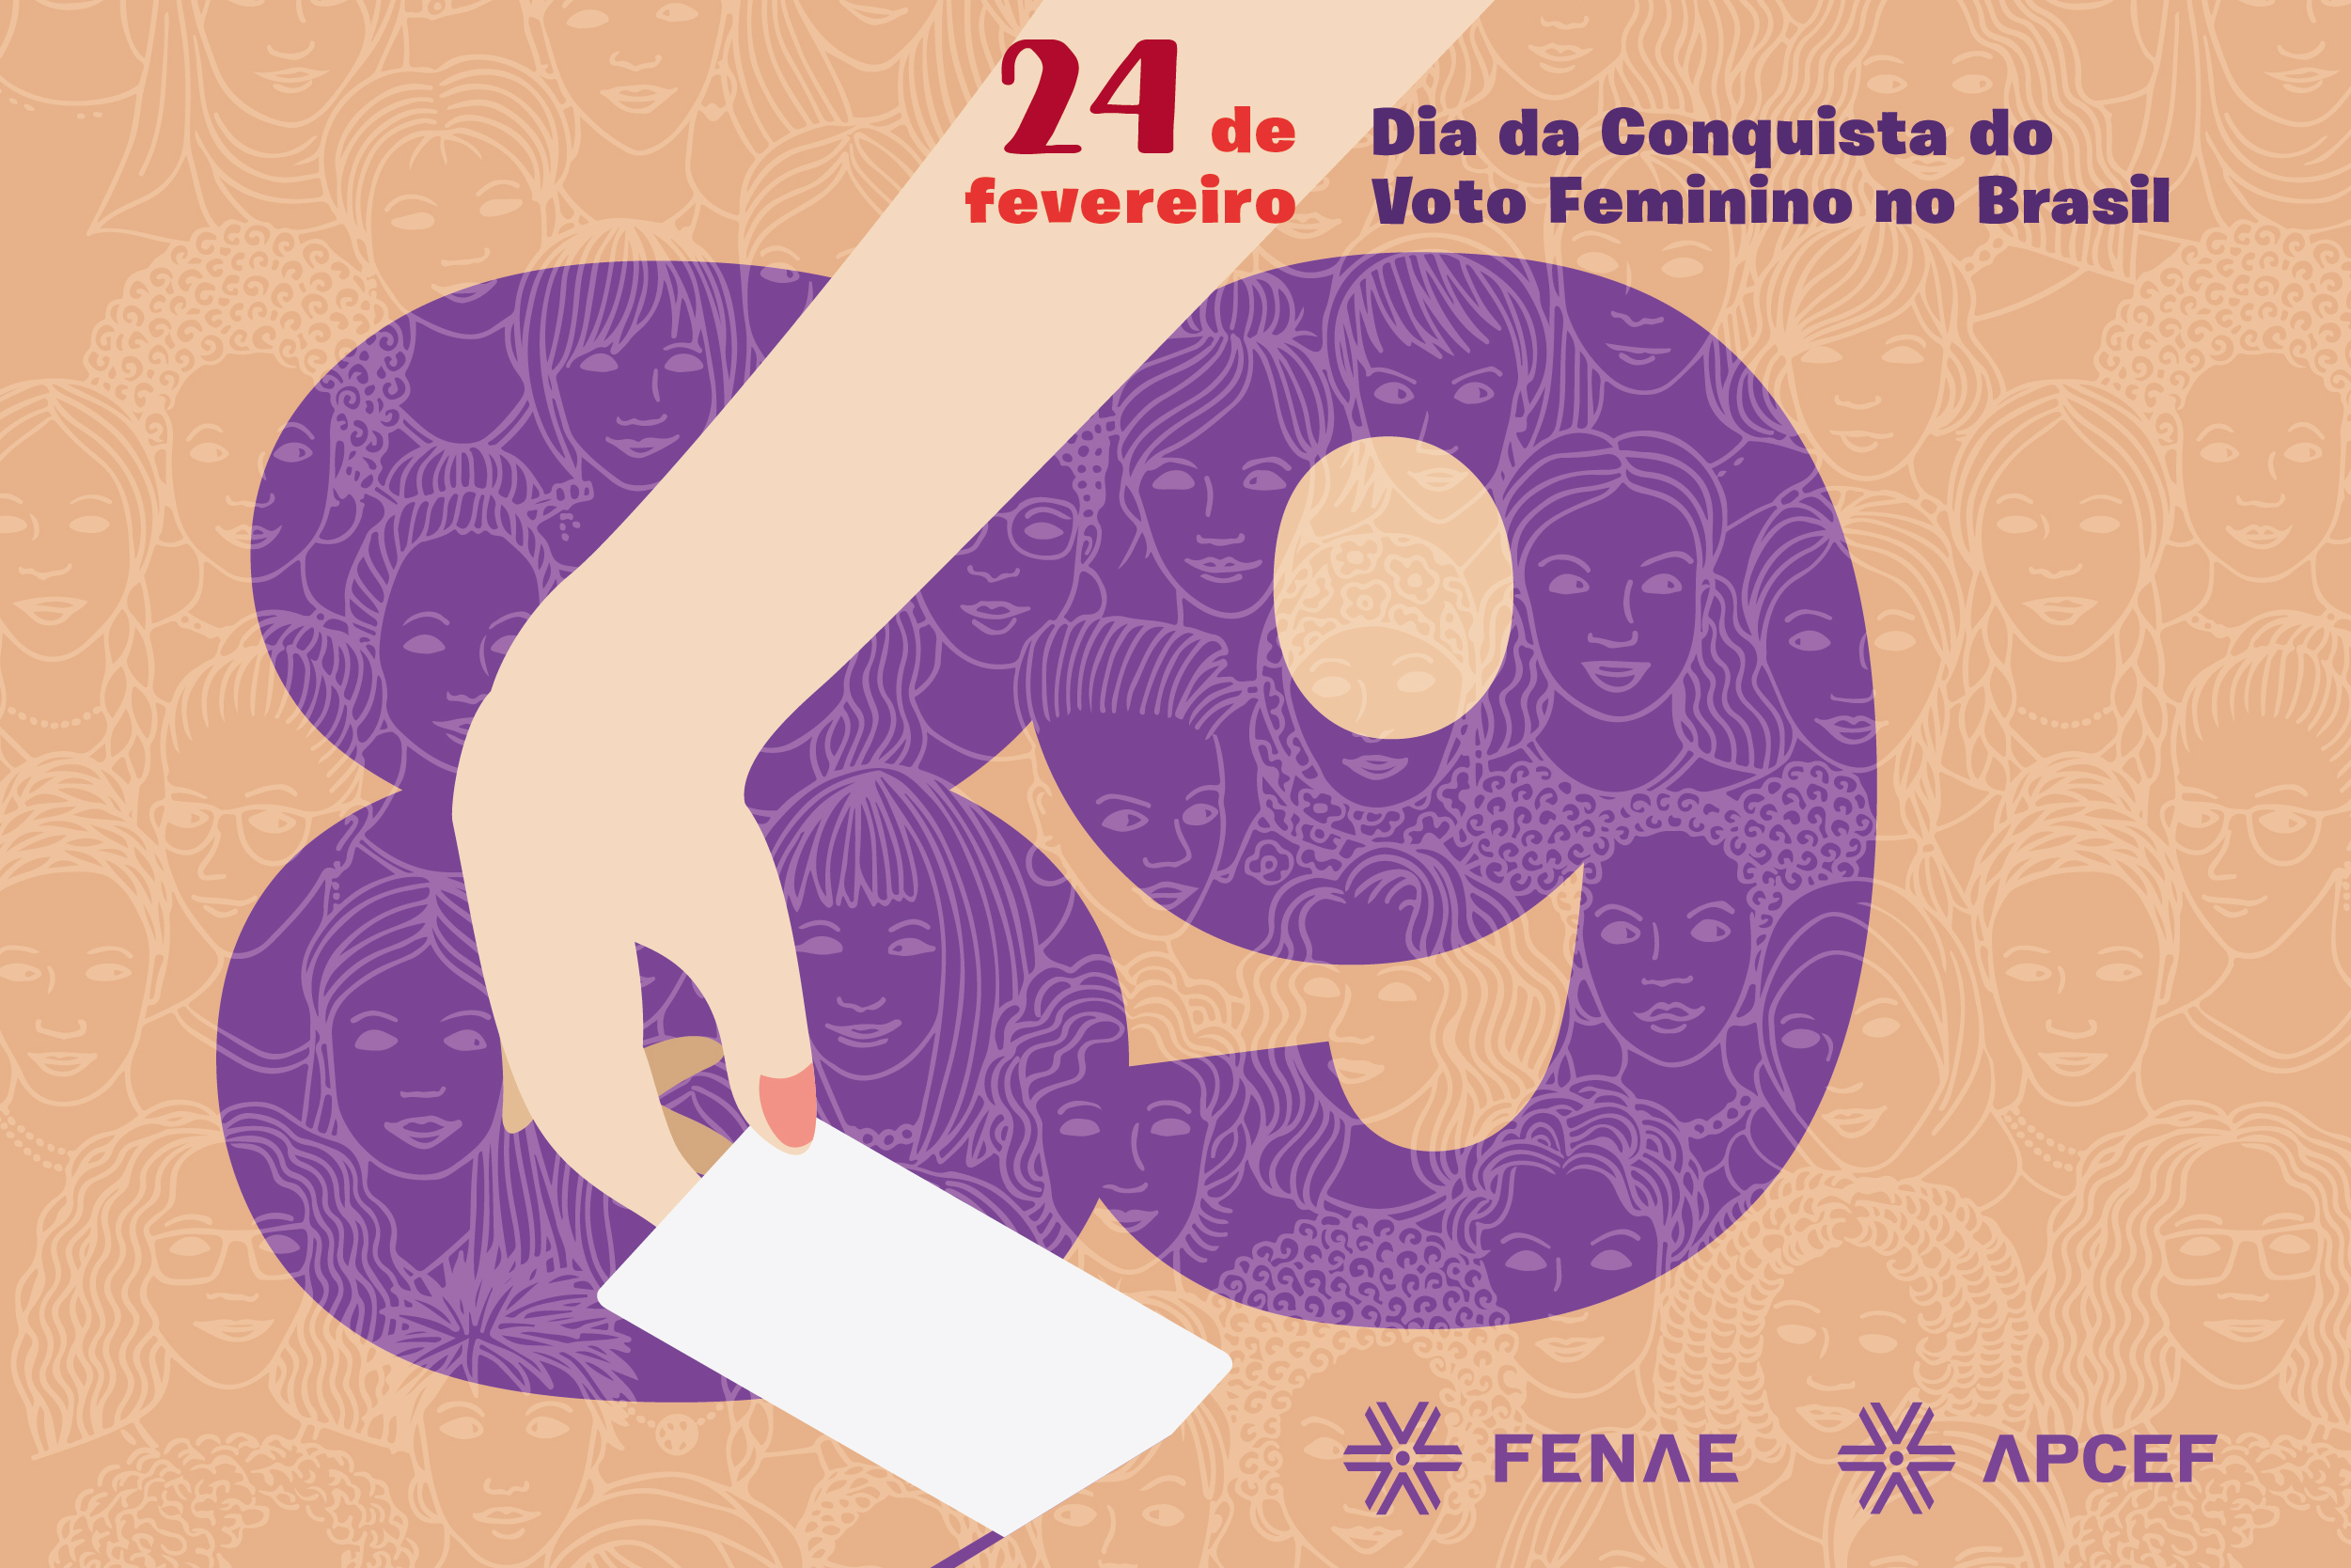 Voto feminino: conquista do direito completa 89 anos nesta quarta (24)